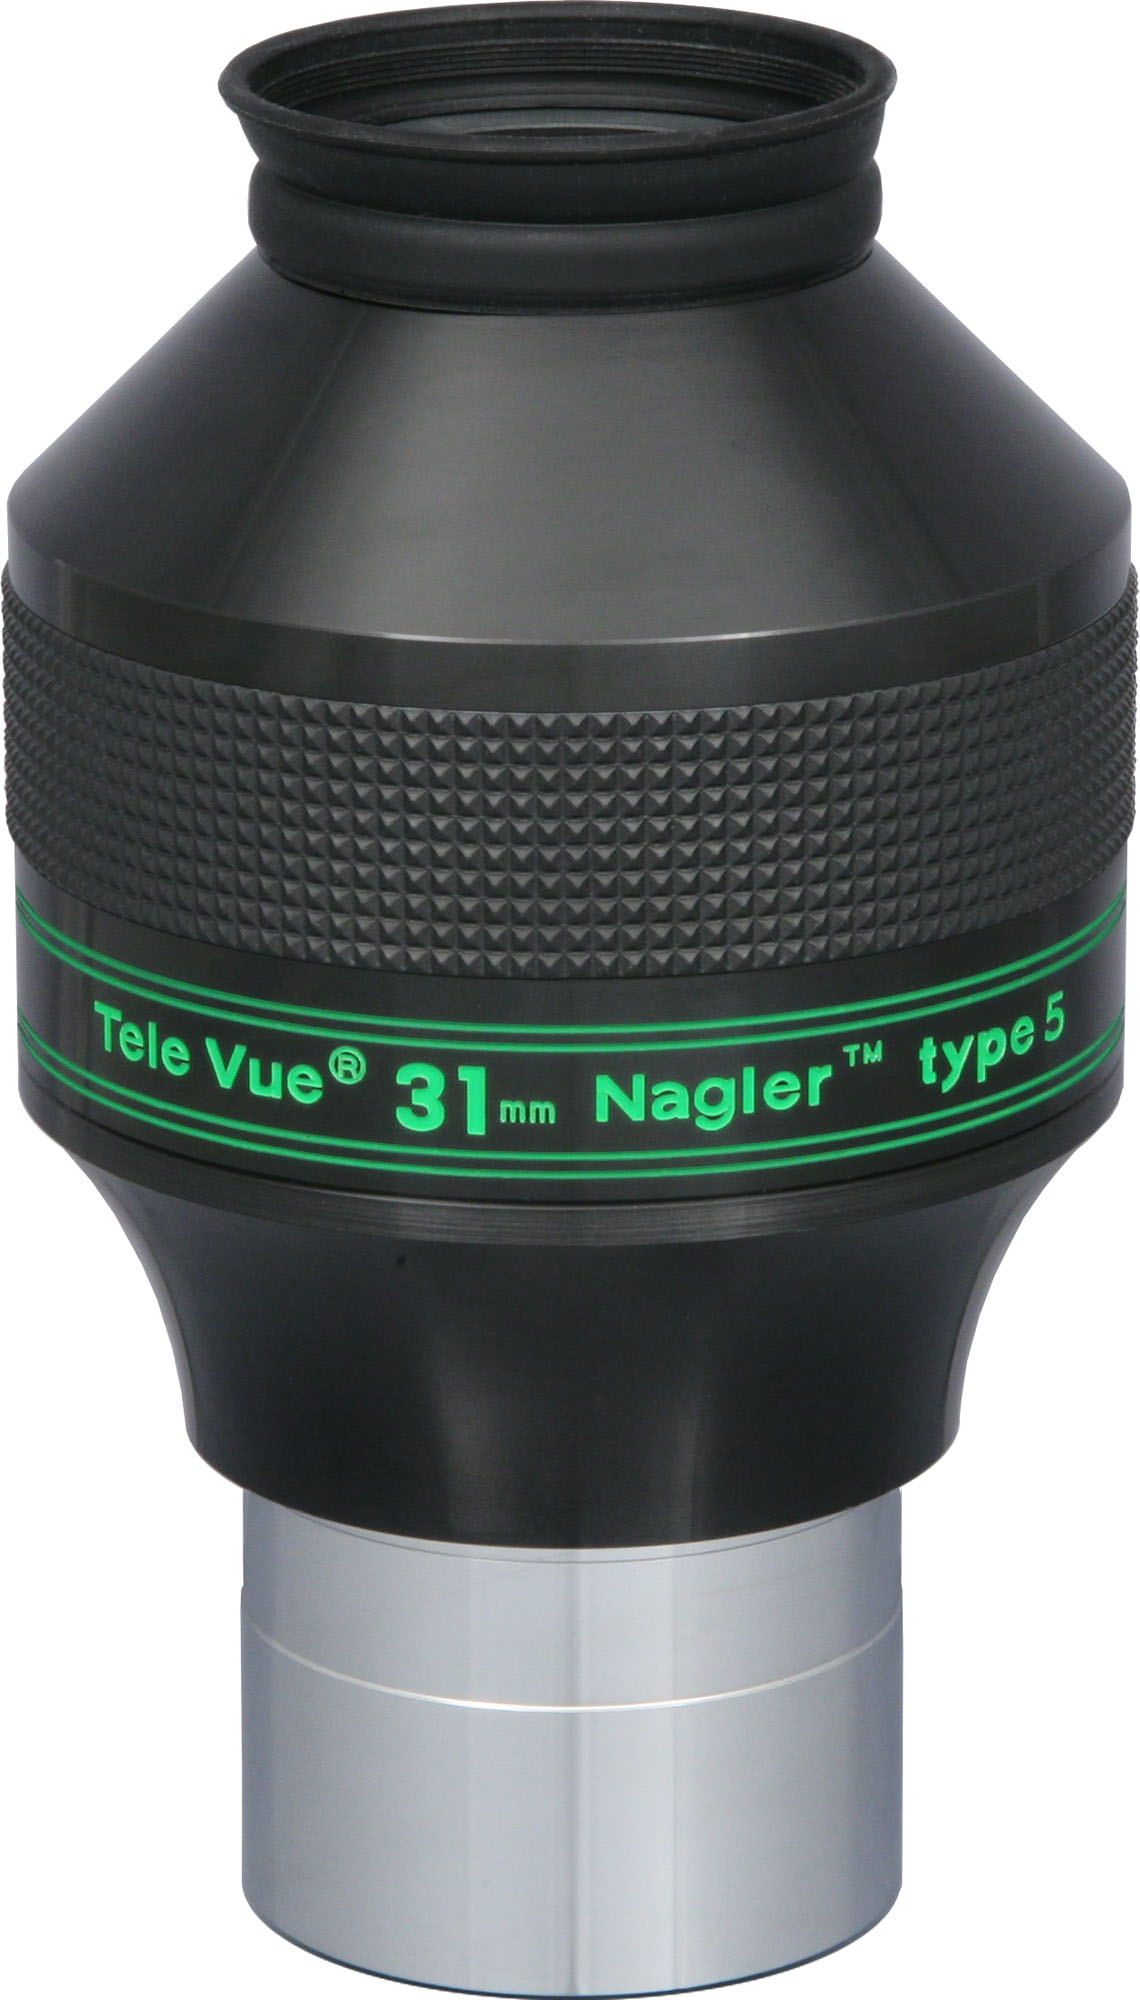 Nagler 31mm Eyepiece